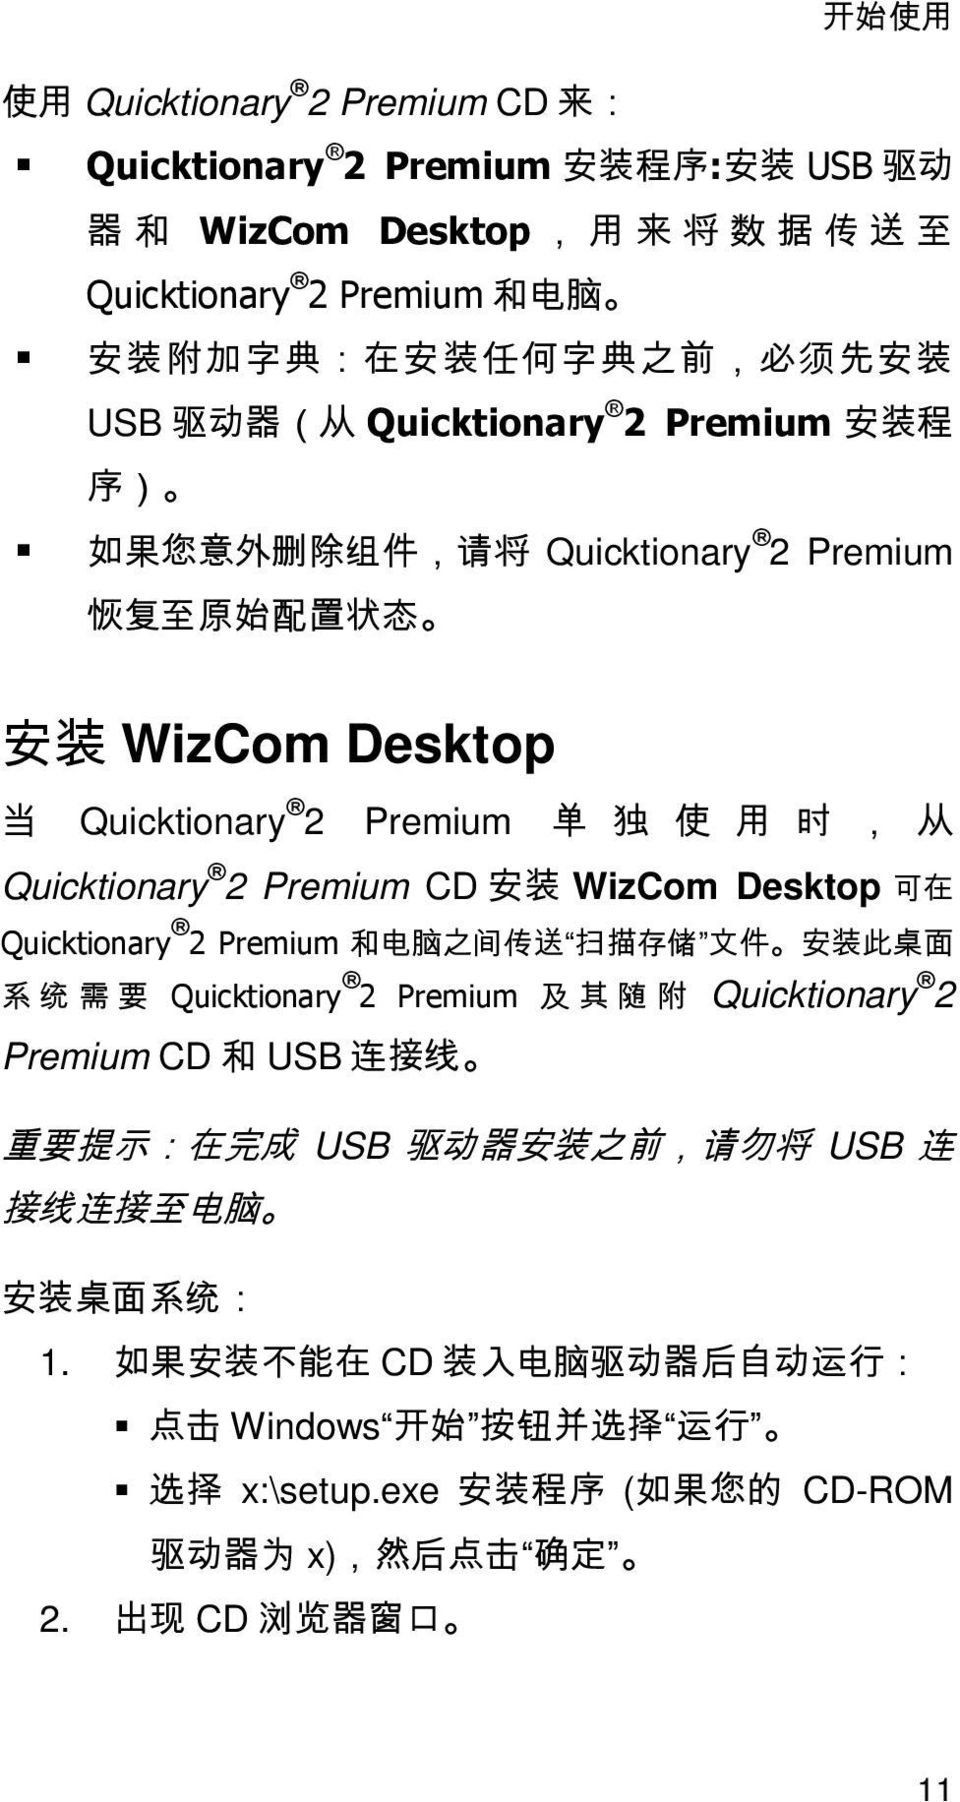 Premium CD 孔 WizCom Desktop Quicktionary 2 Premium 䟄厠 梃 抐 㓺㙞 㠖 ↅᇭ 孔㷳㫛槱侊兮榏尐 Quicktionary 2 Premium 椞棓 Quicktionary 2 Premium CD USB 扭㘴兎 ᇭ 摜尐㙟䯉 㒟